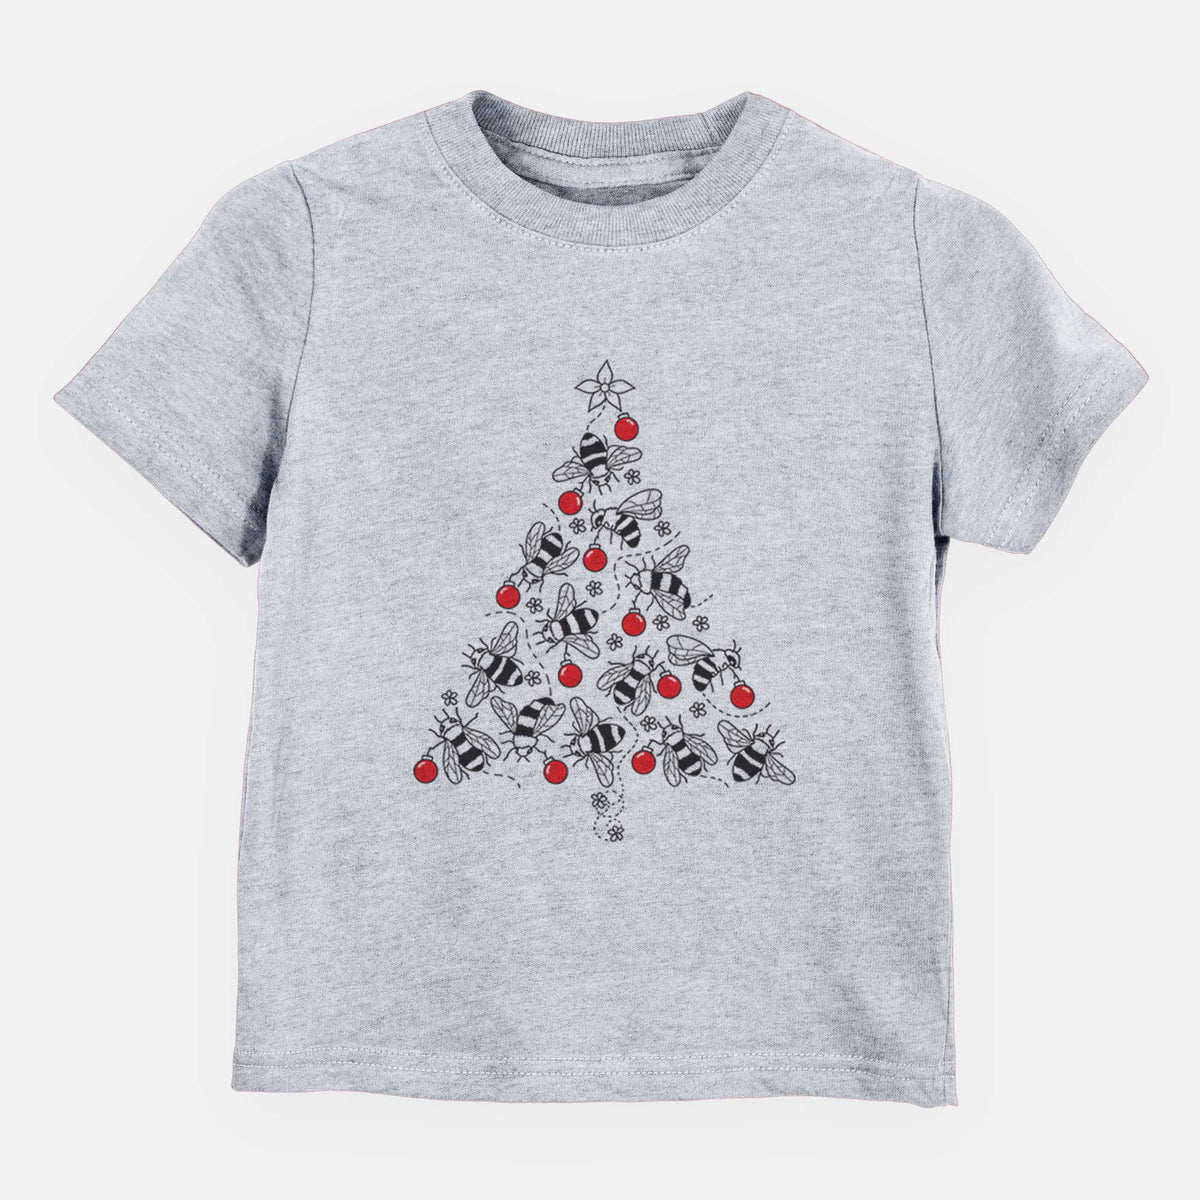 Christmas Tree of Bees - Kids Shirt